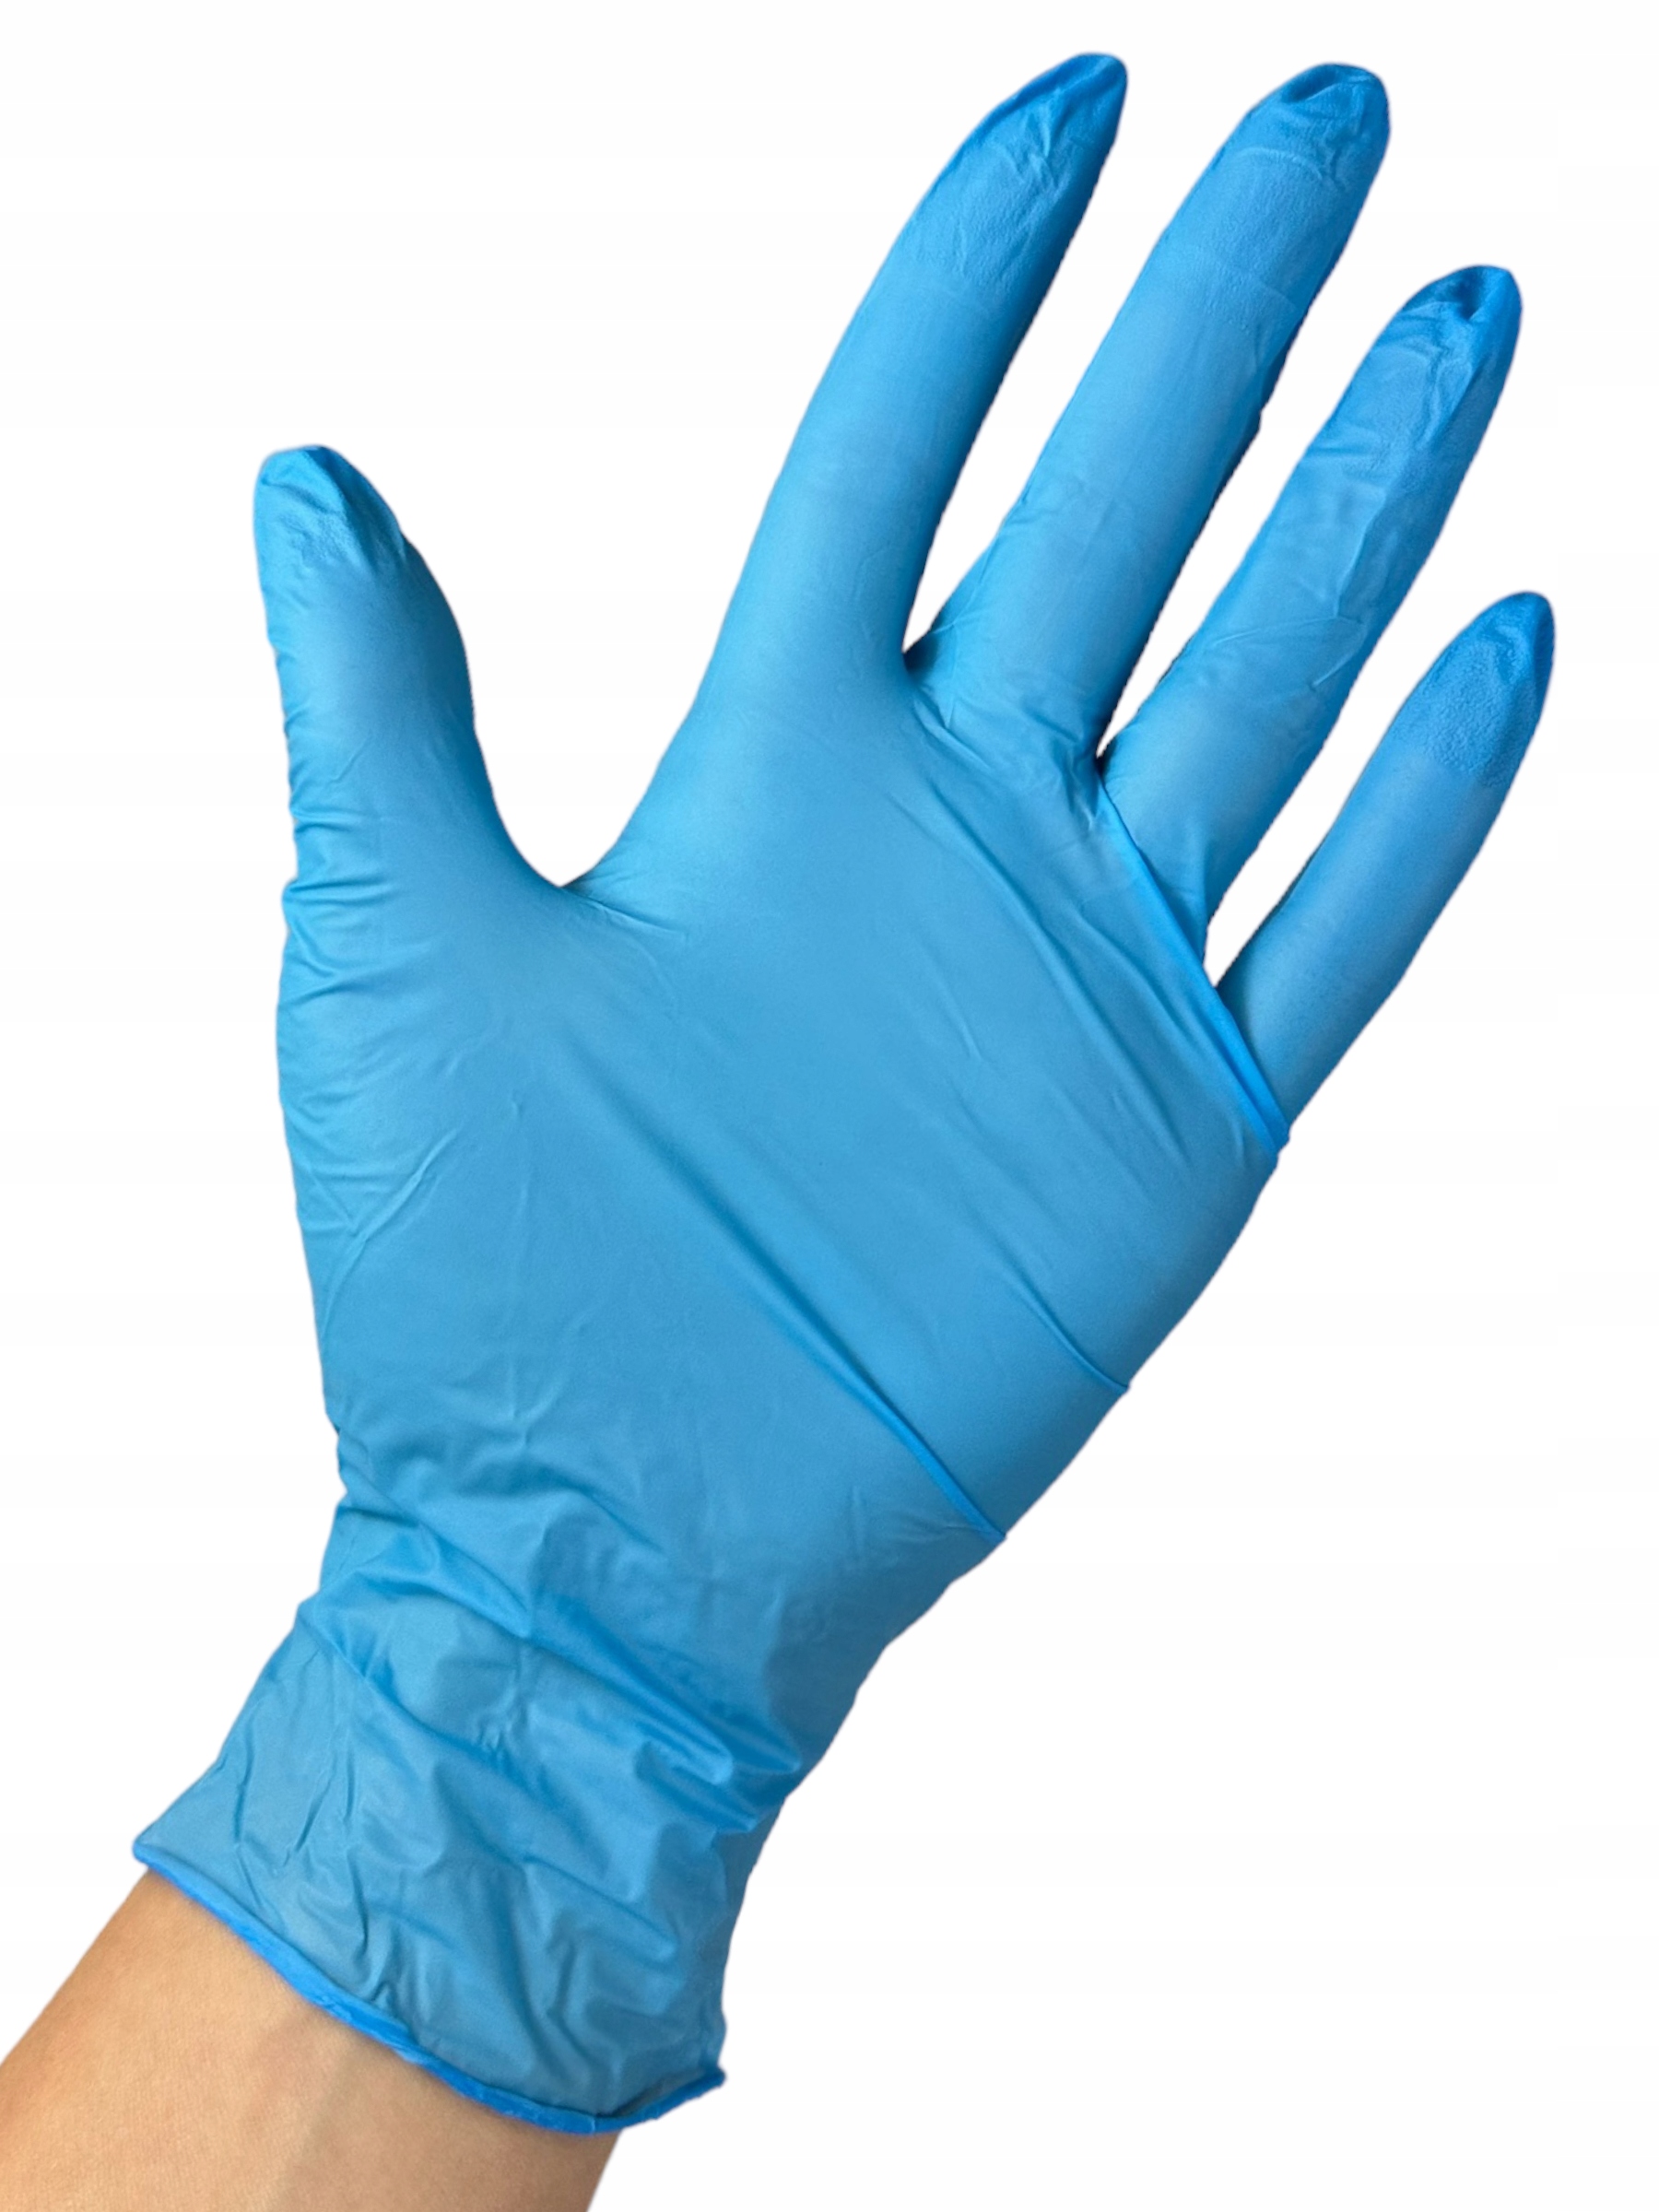 Rękawiczki NIEBIESKIE nitrylowe rozmiar L 100 SZTUK na cele medyczne PLAST EAN (GTIN) 5907501775022